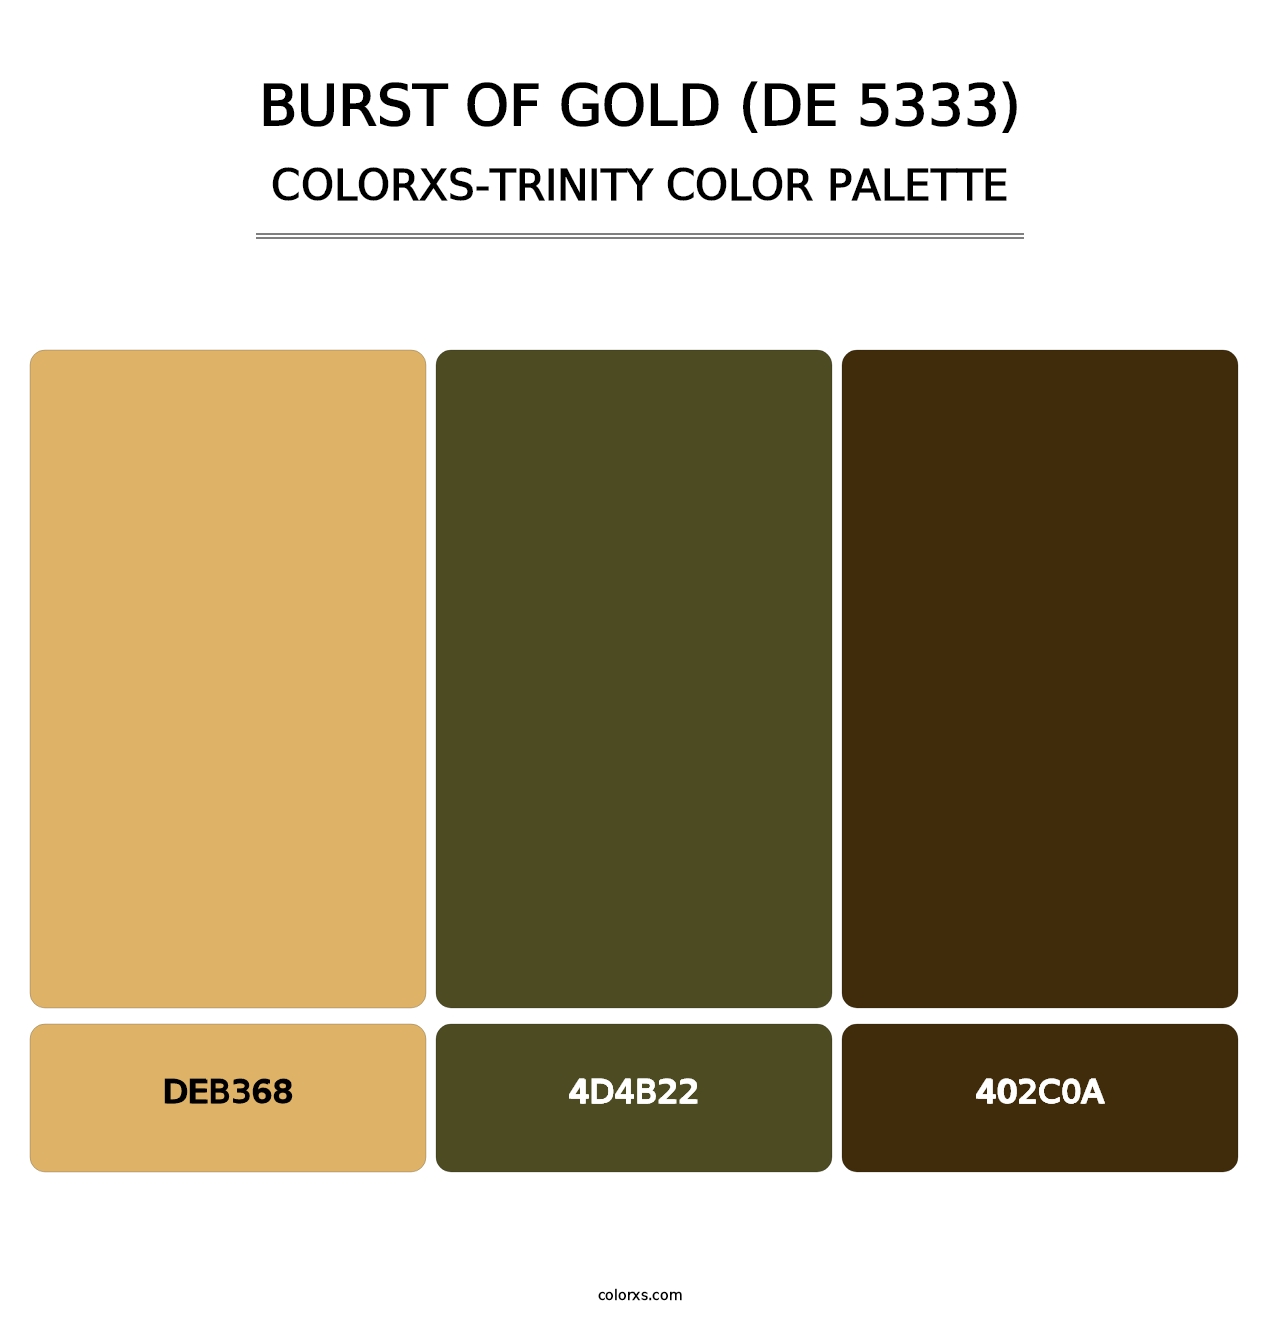 Burst of Gold (DE 5333) - Colorxs Trinity Palette